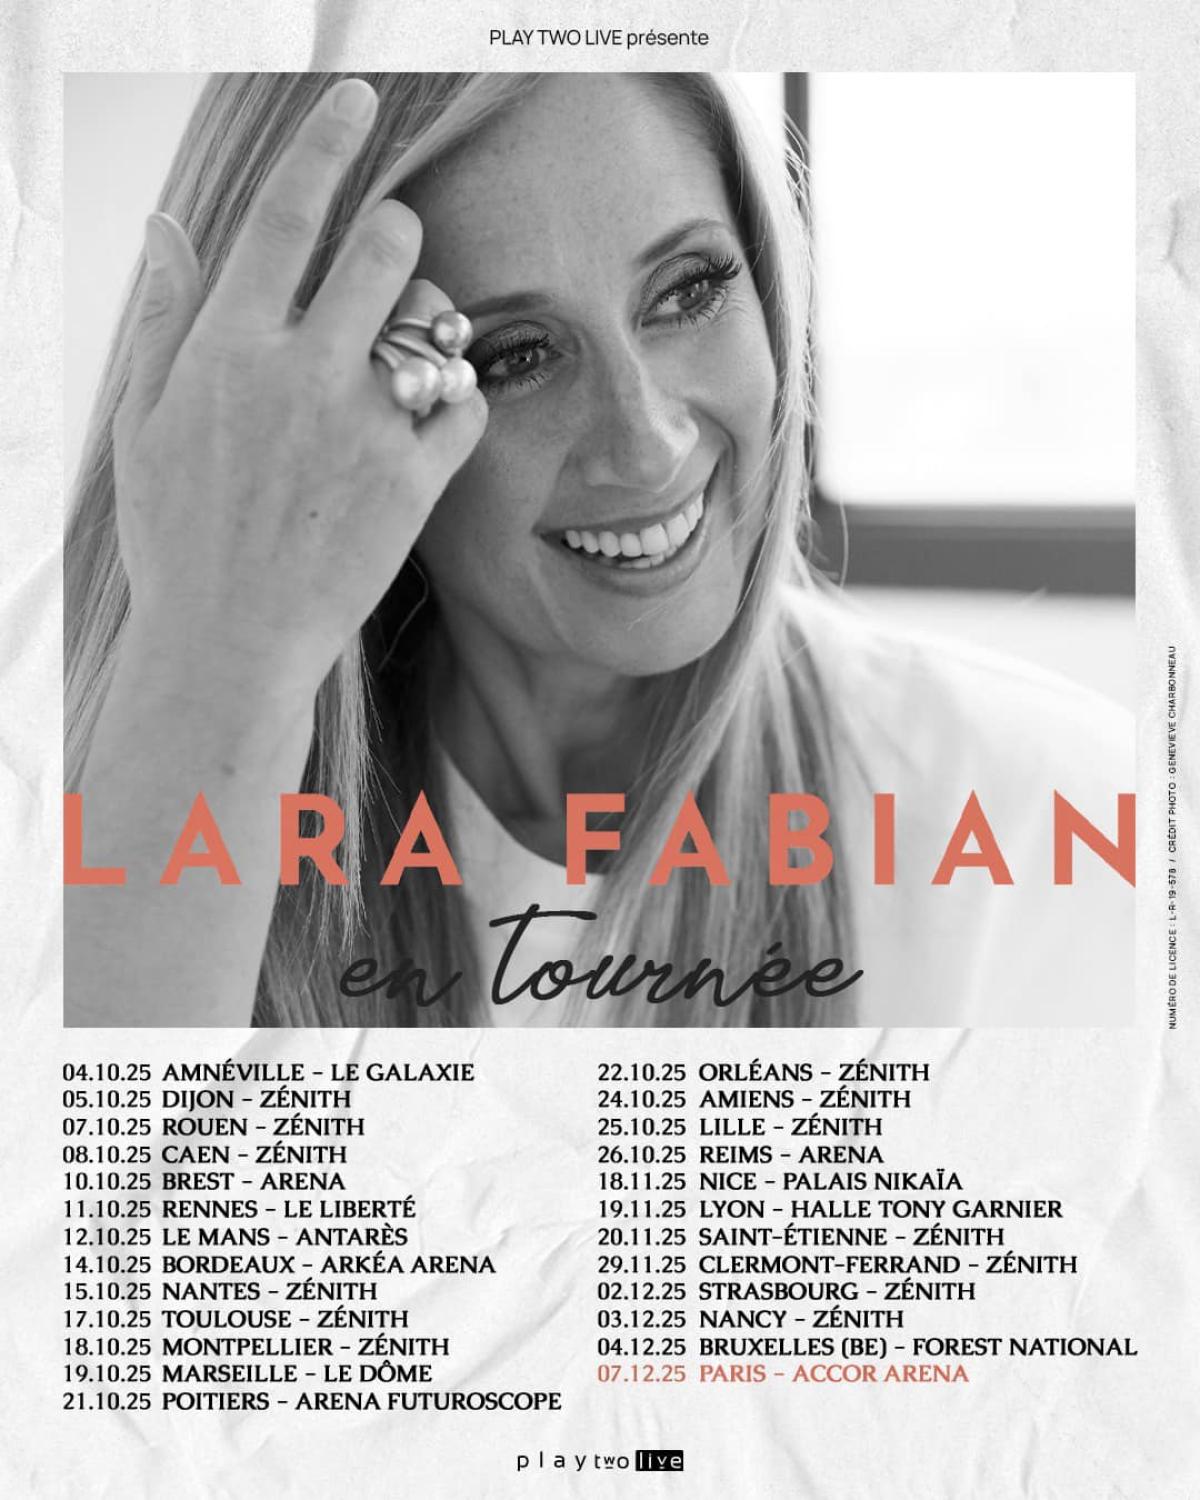 Lara Fabian at Zenith d'Auvergne Tickets